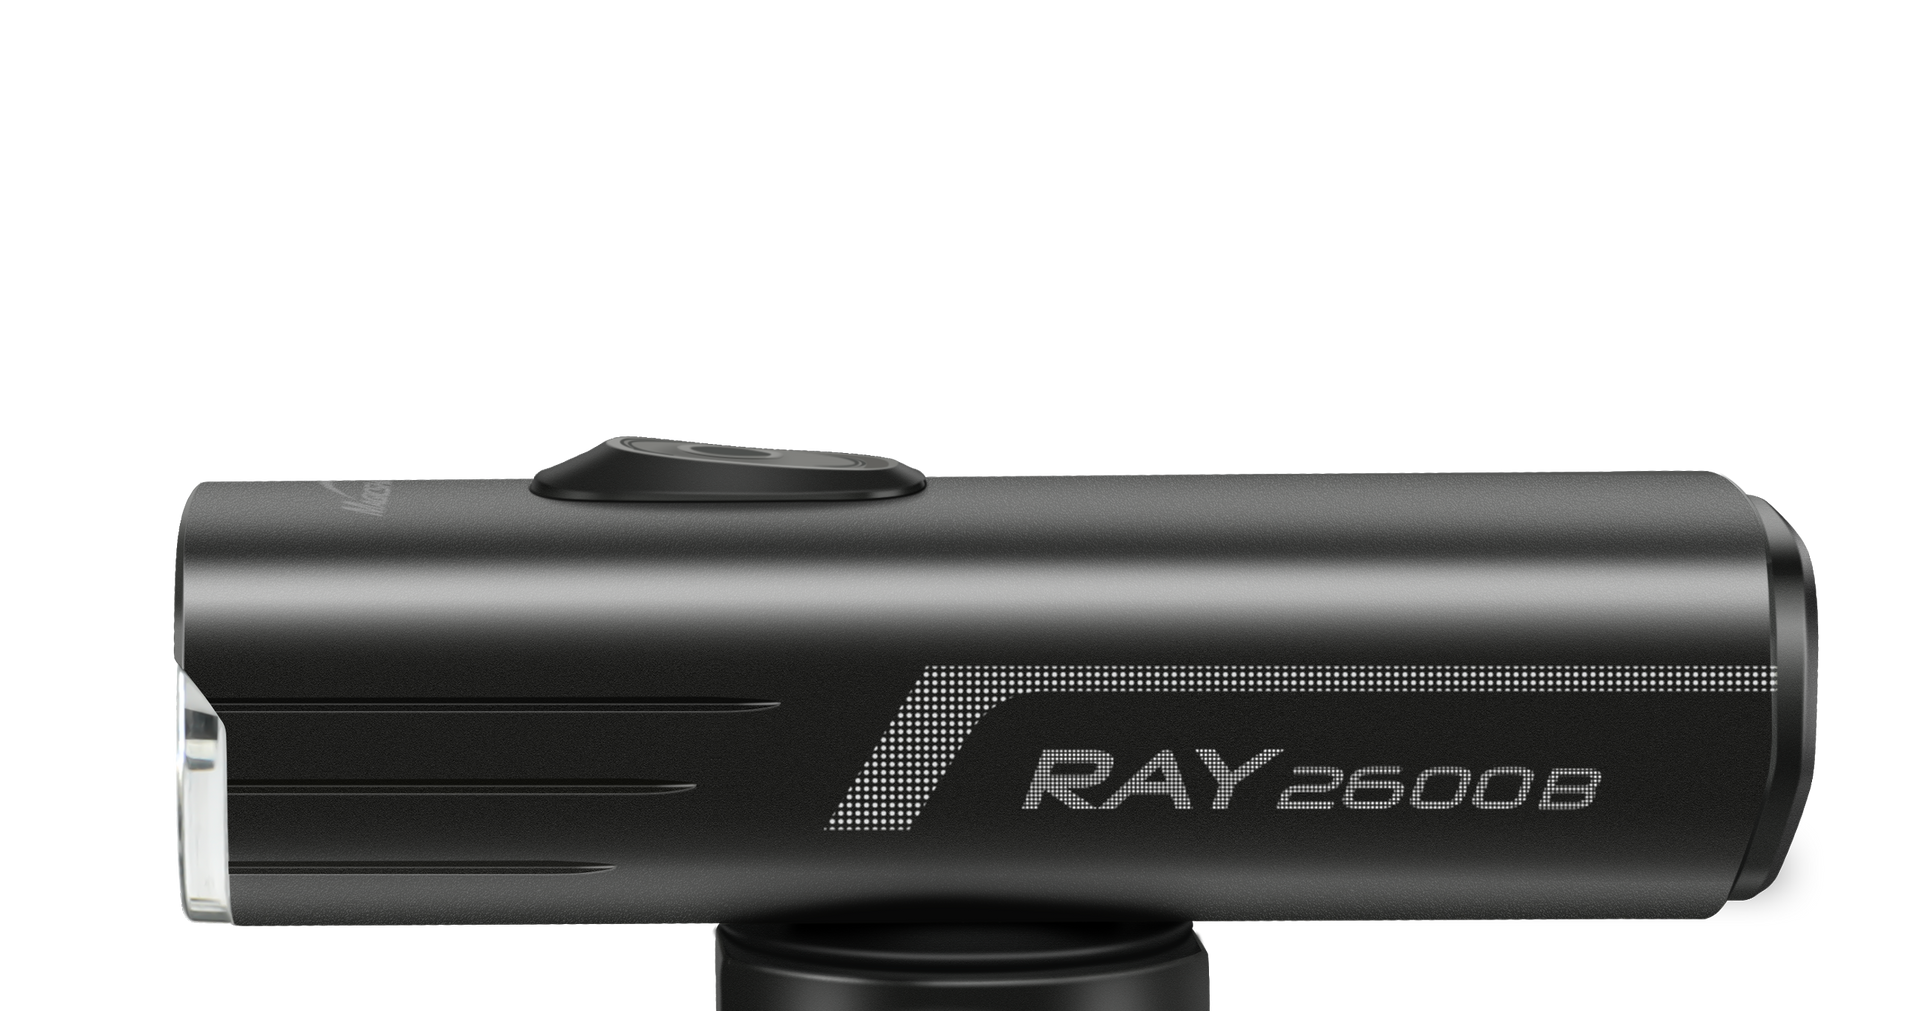 Magicshine RAY 2600 Helmlampe mit integriertem Akku, für alle Outdooraktivitäten oder als Taschenlampe